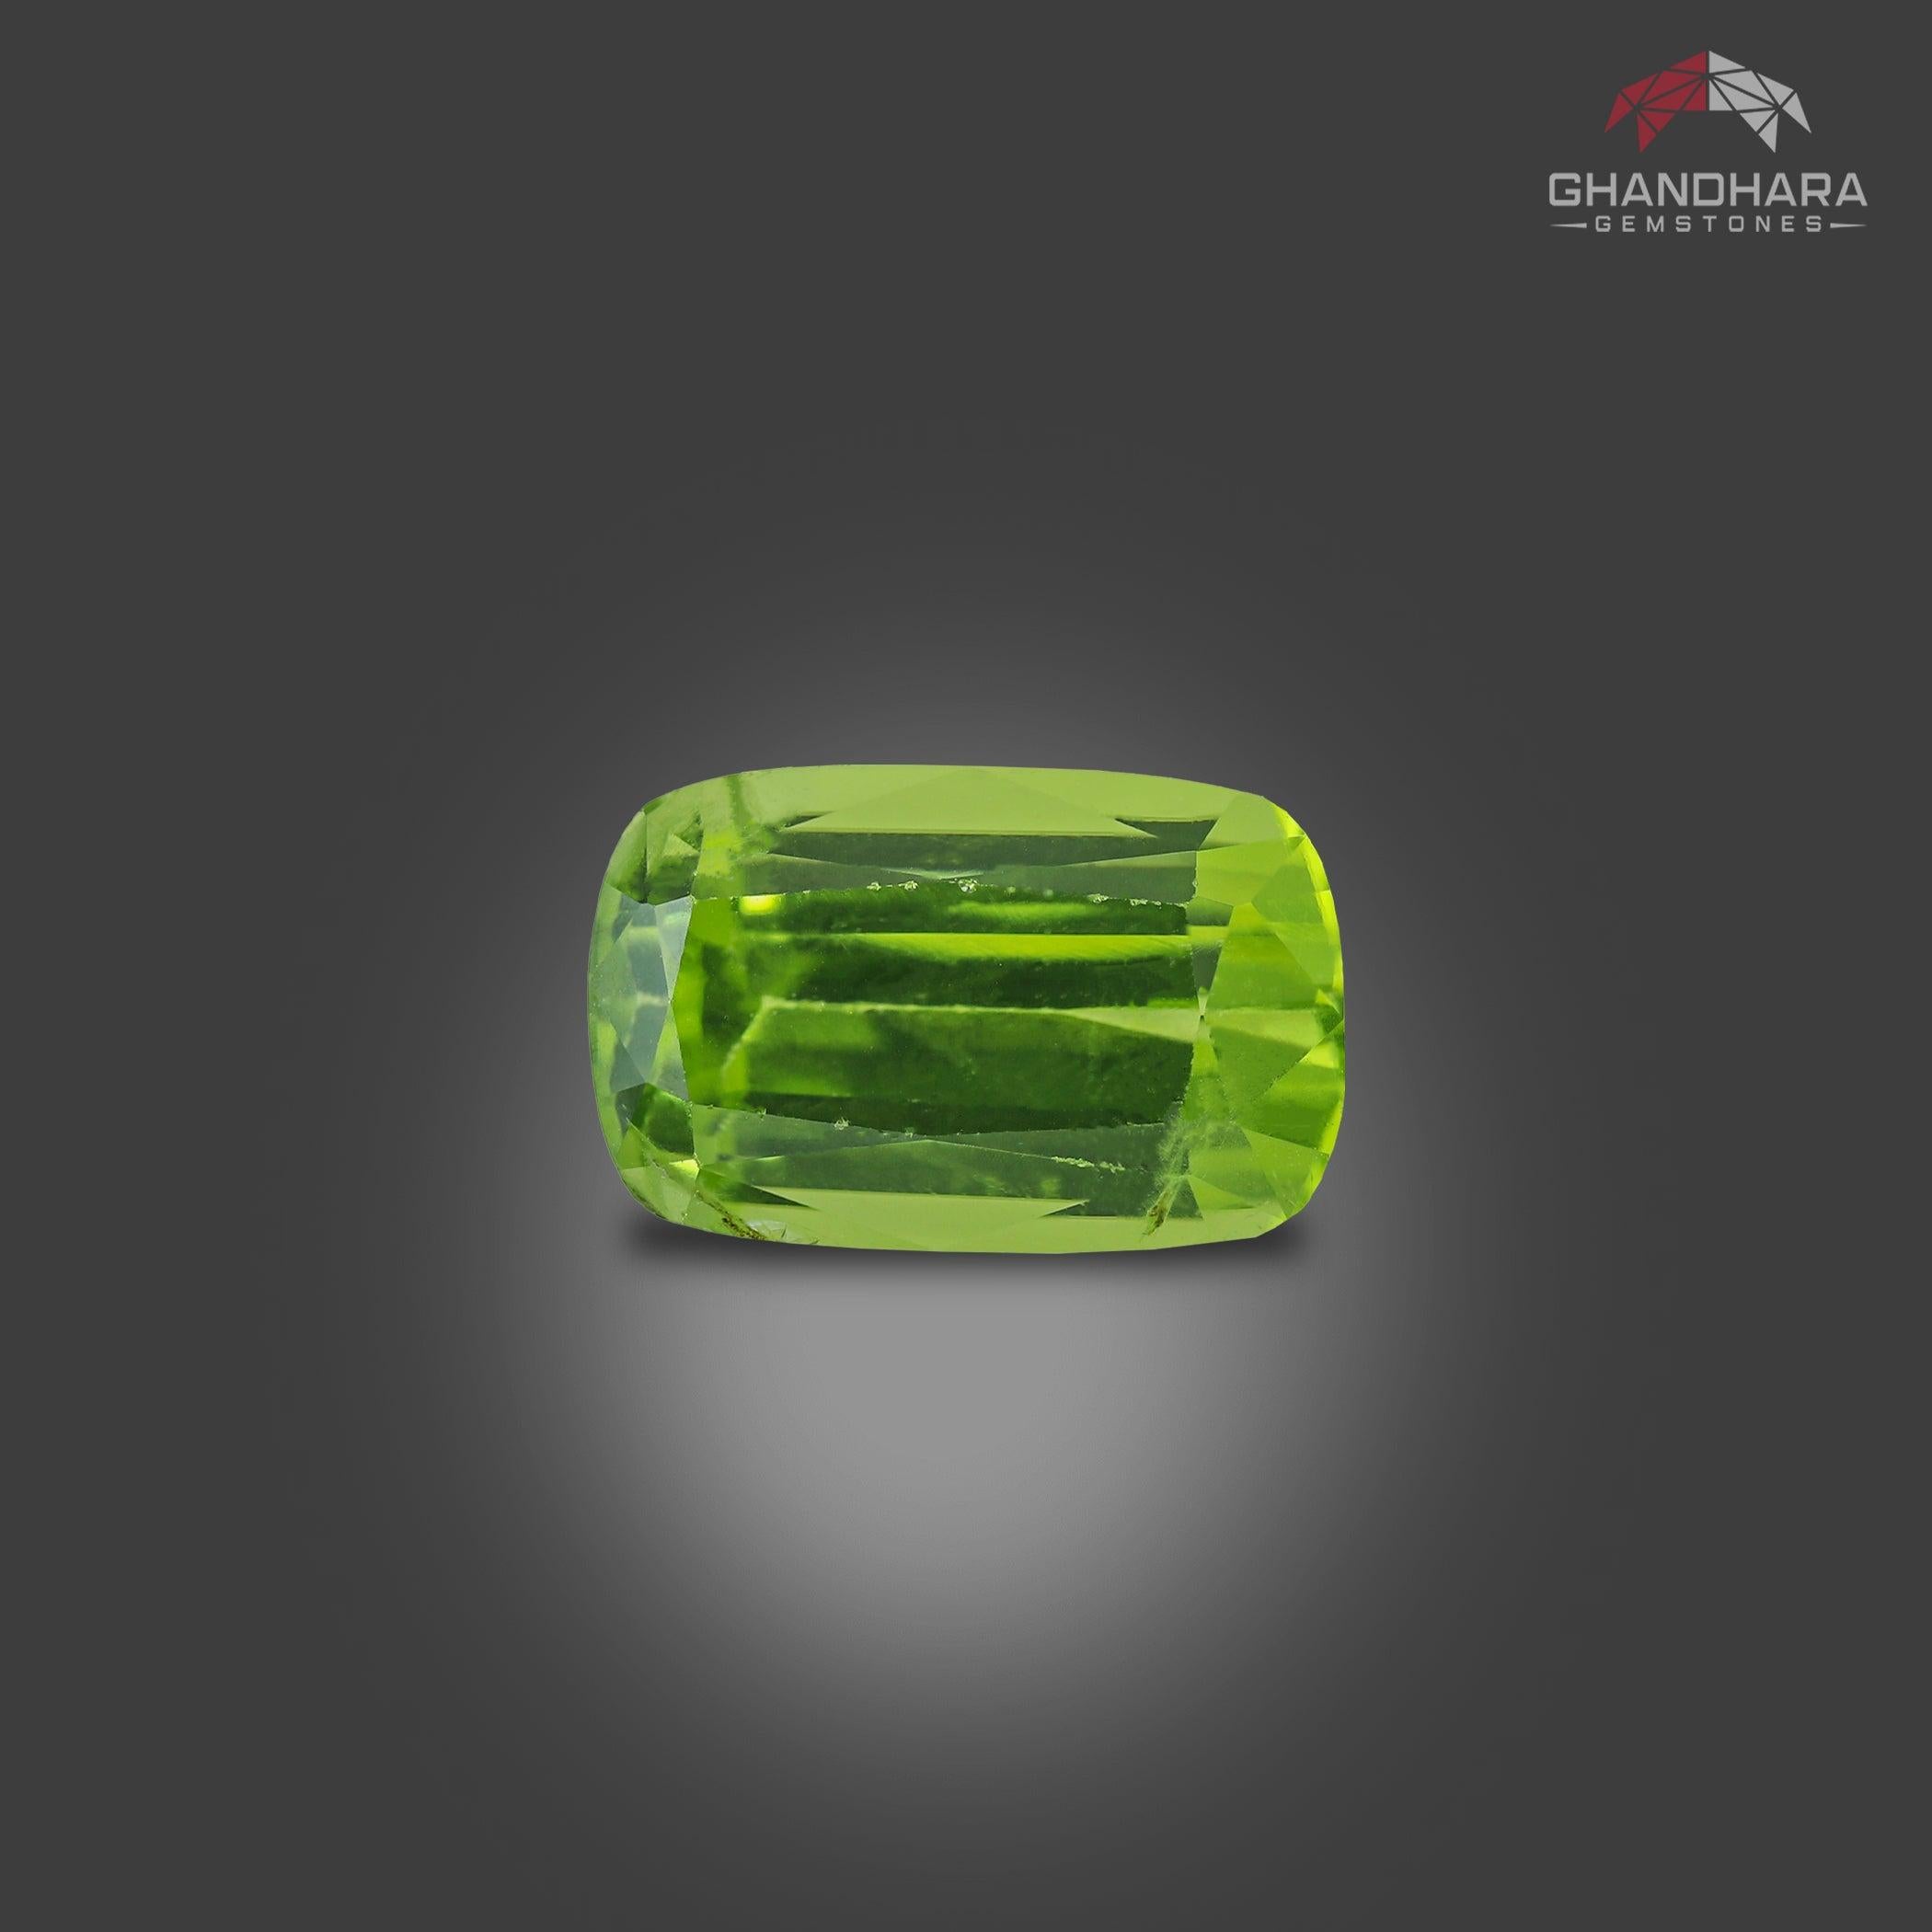 Péridot naturel d'un vert profond de 4,05 carats en provenance du Pakistan. Il est taillé en forme de coussin et présente une incroyable couleur verte. Une grande brillance. Cette pierre précieuse est d'une clarté VVS.

Informations sur le produit